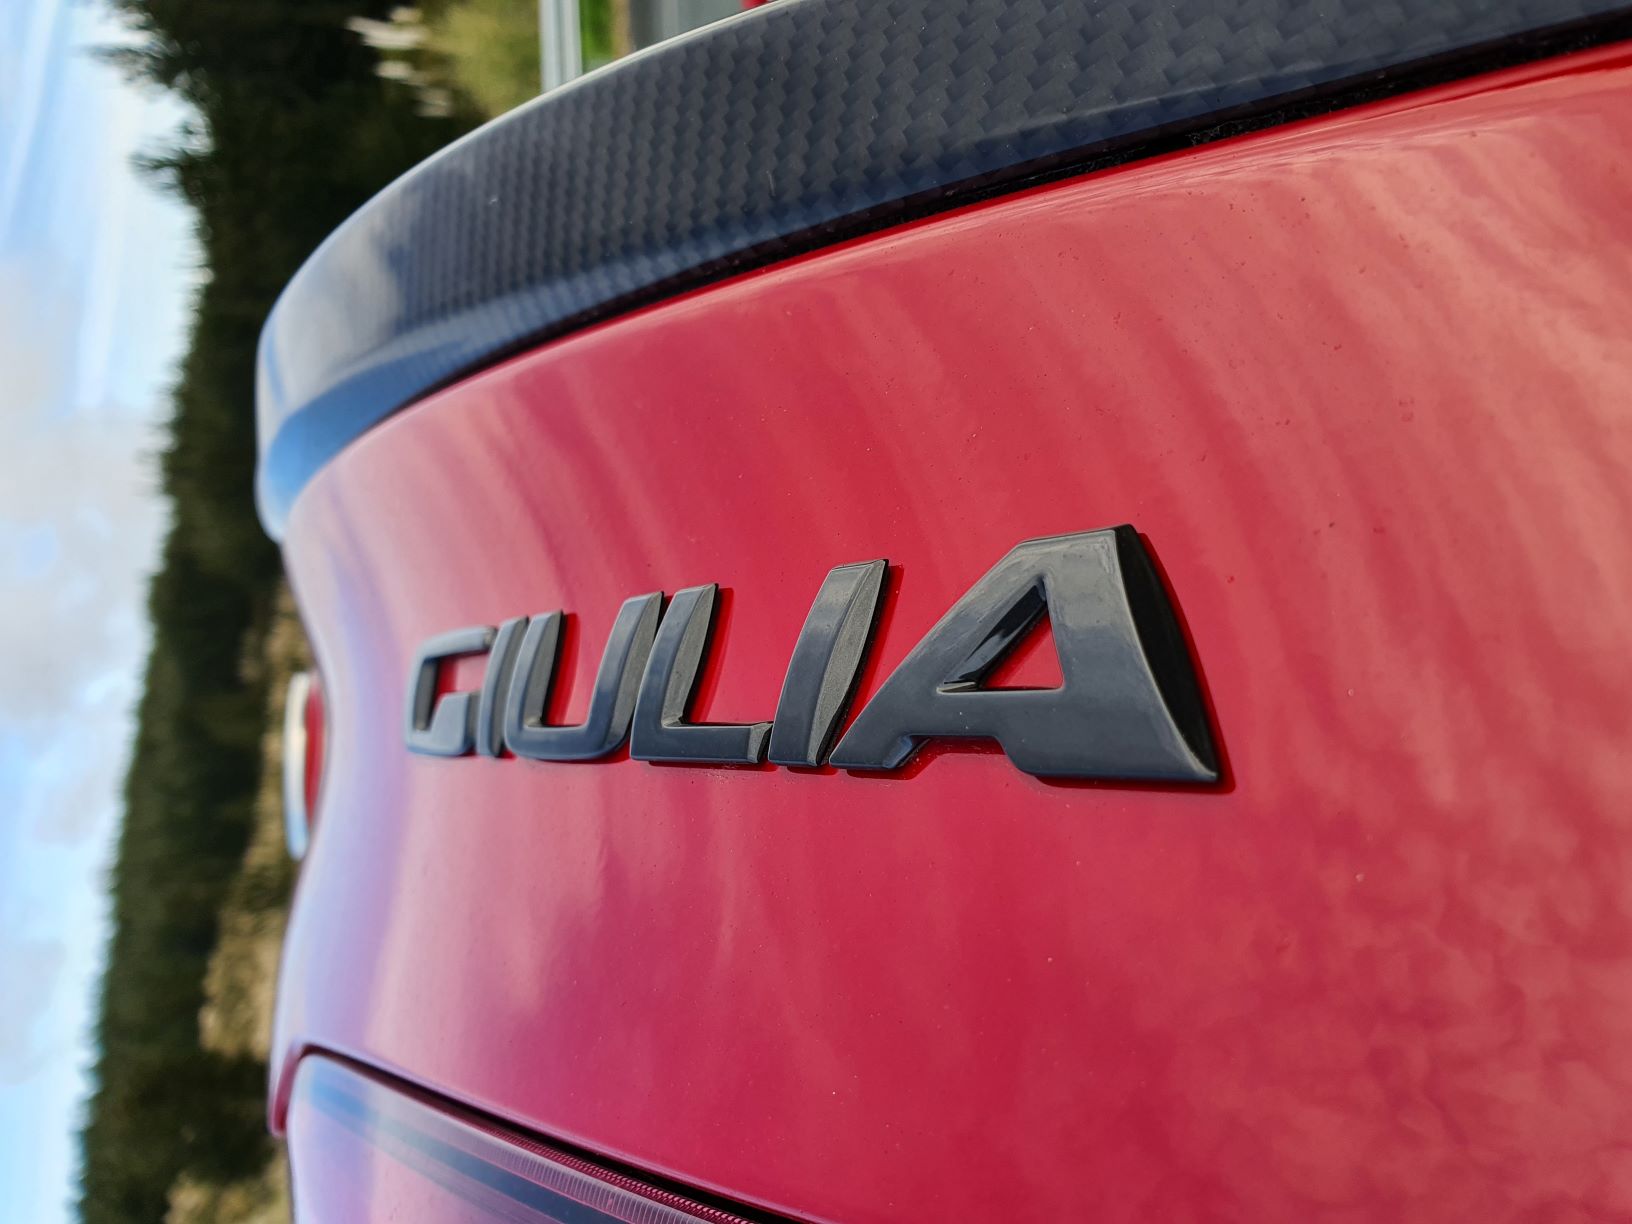 The Giulia badge on the Alfa Romeo Giulia Veloce